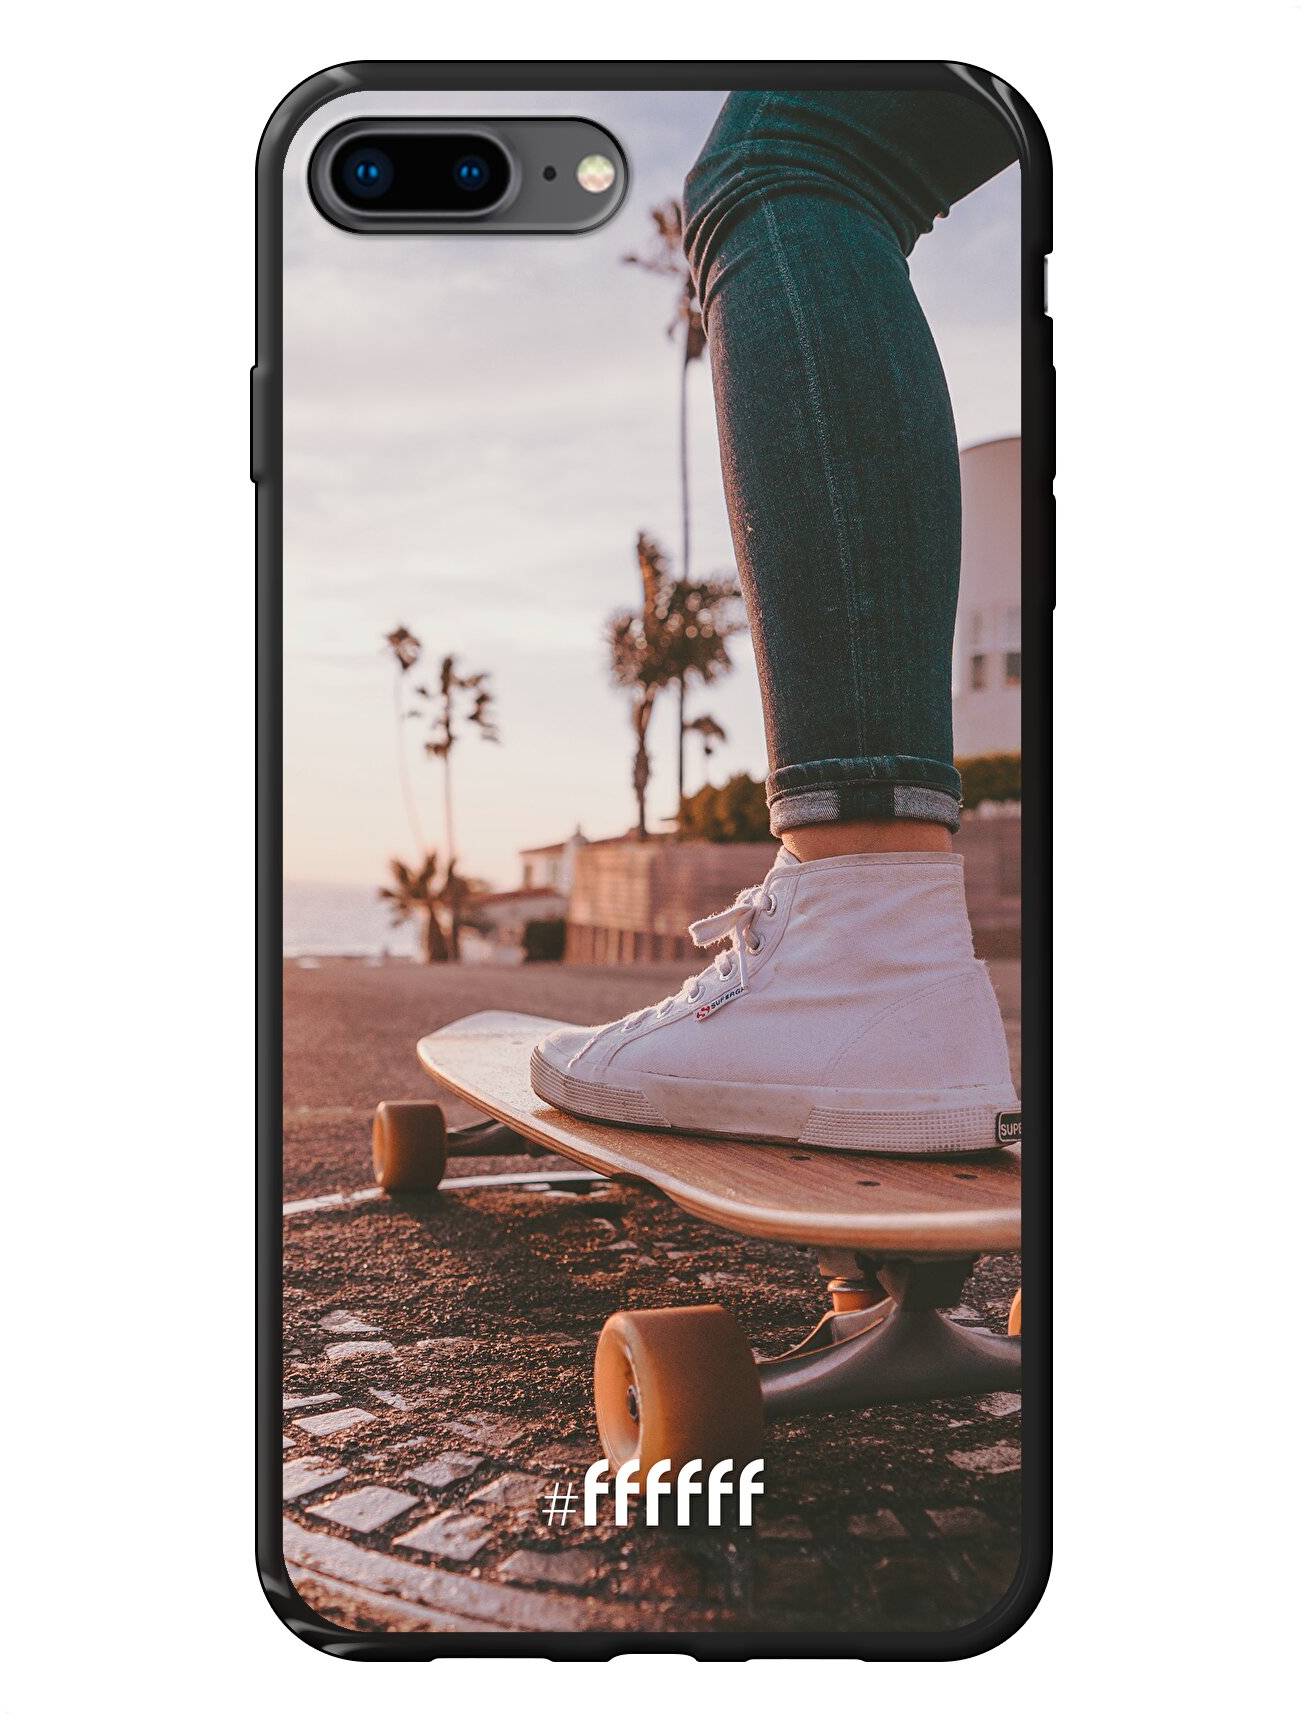 Skateboarding iPhone 8 Plus